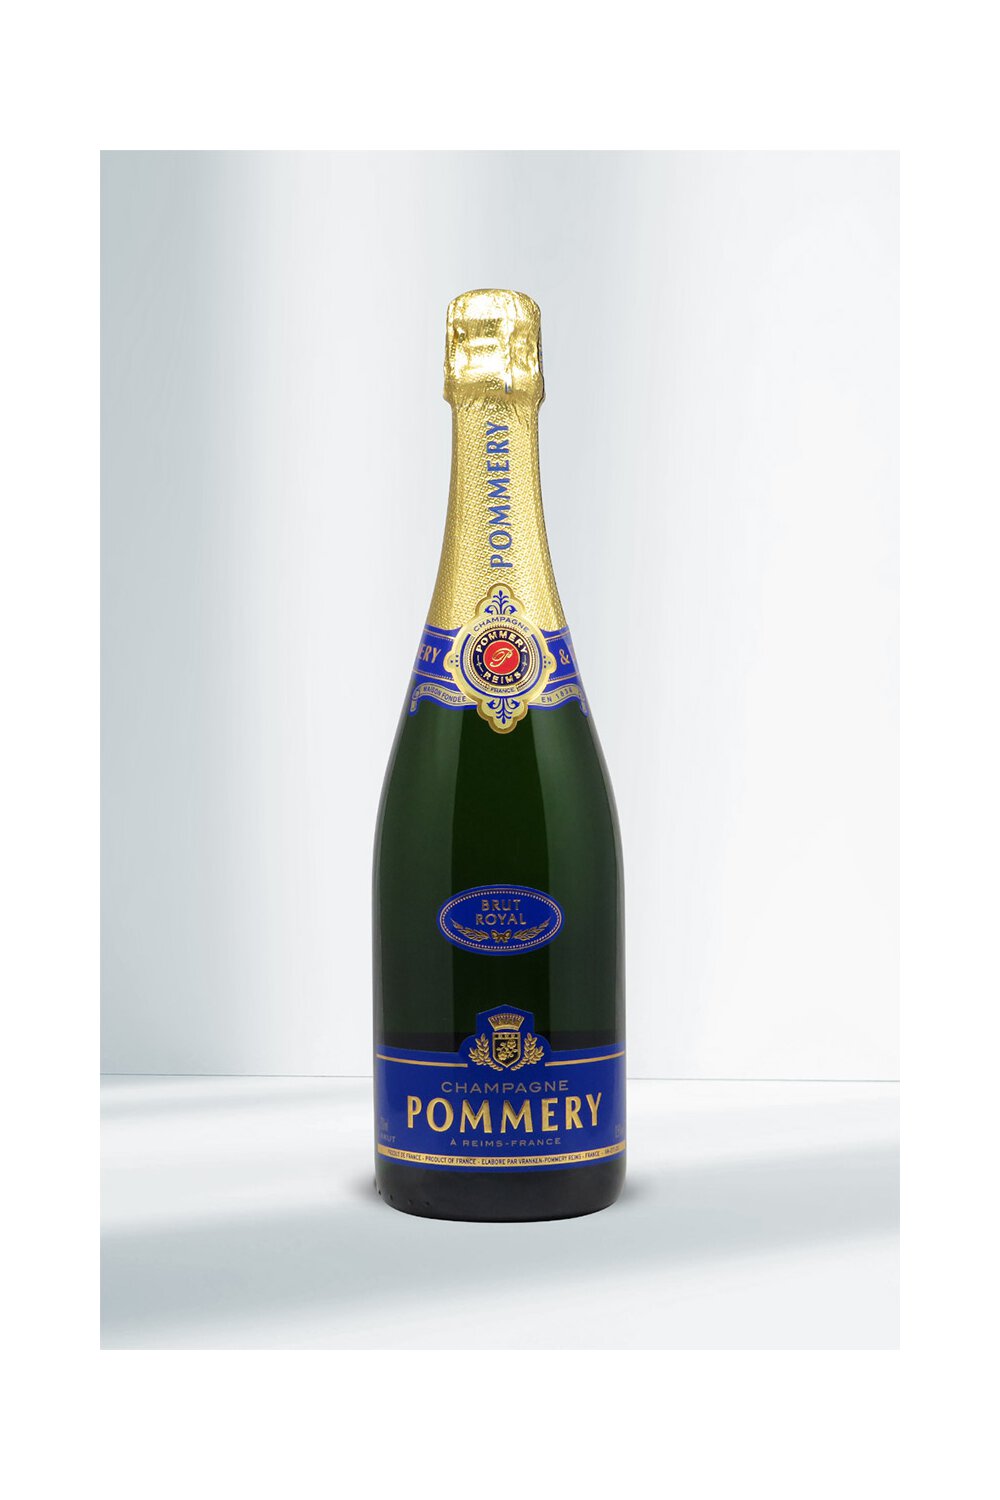 Pommery Brut Royal Champagner 12,5% I Beverage-Shop